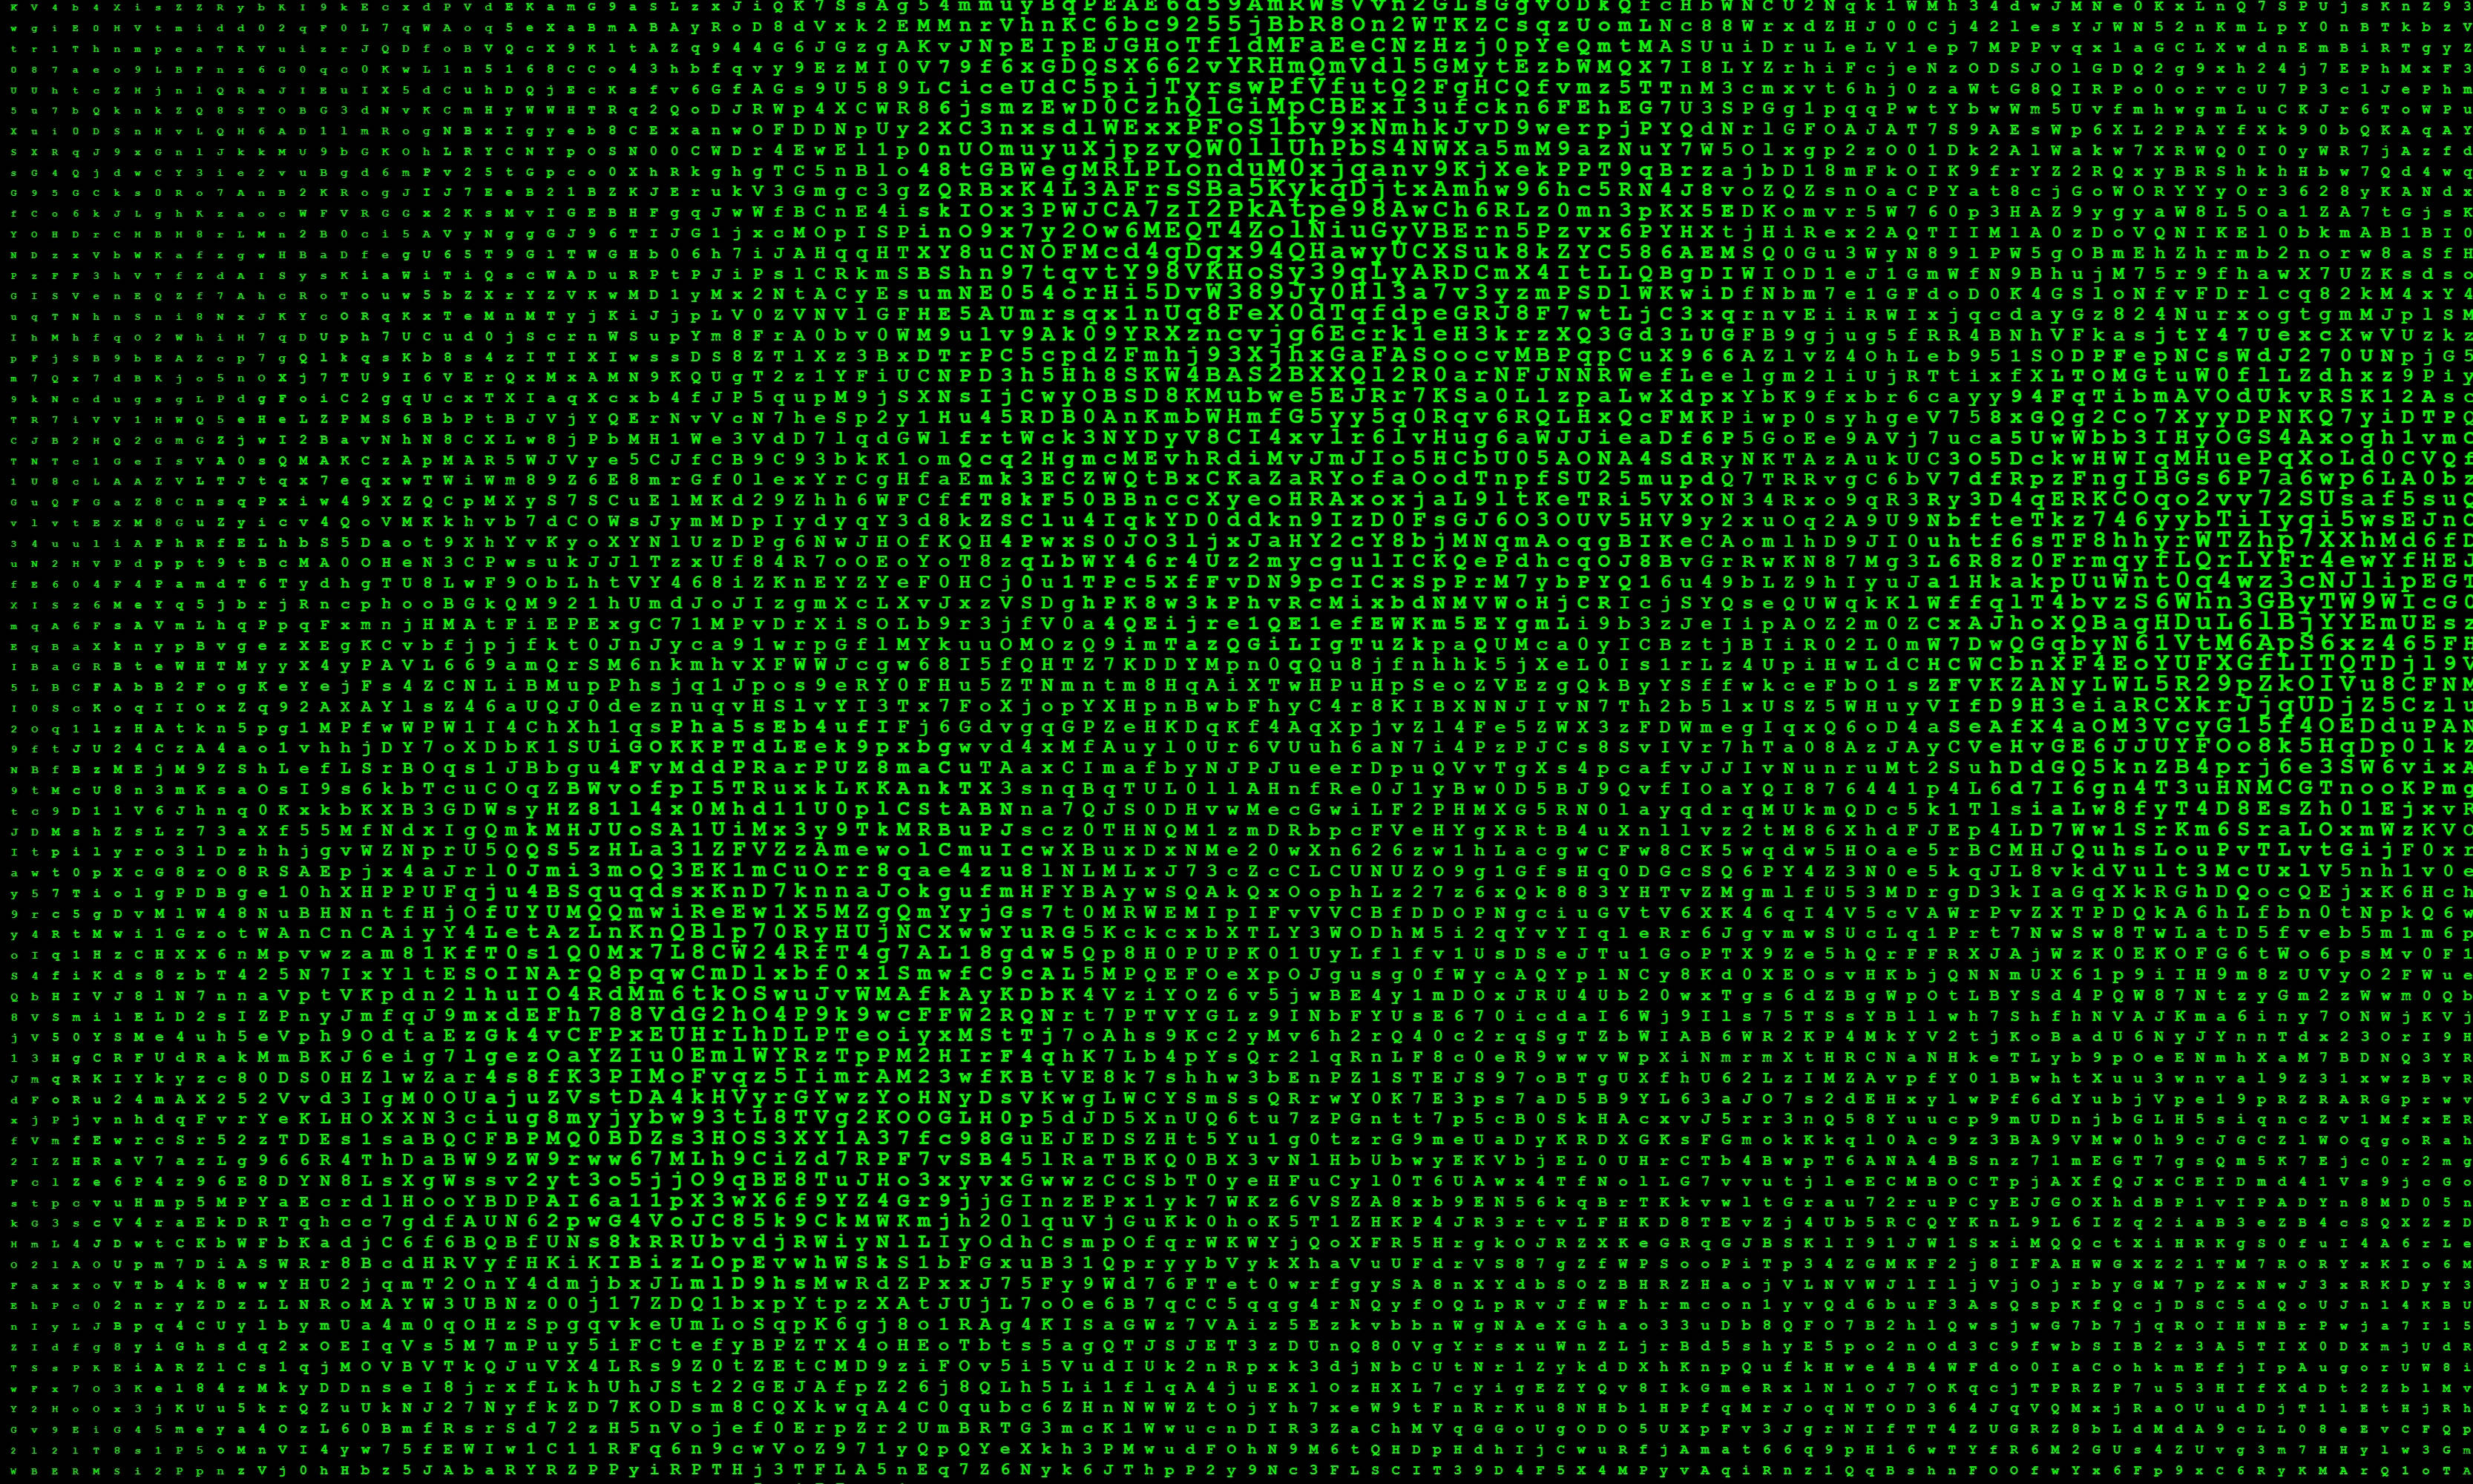 Пиксели html. Зеленый пиксель. Матрица текстура. Темно зеленый экран. Темно зеленый фон.